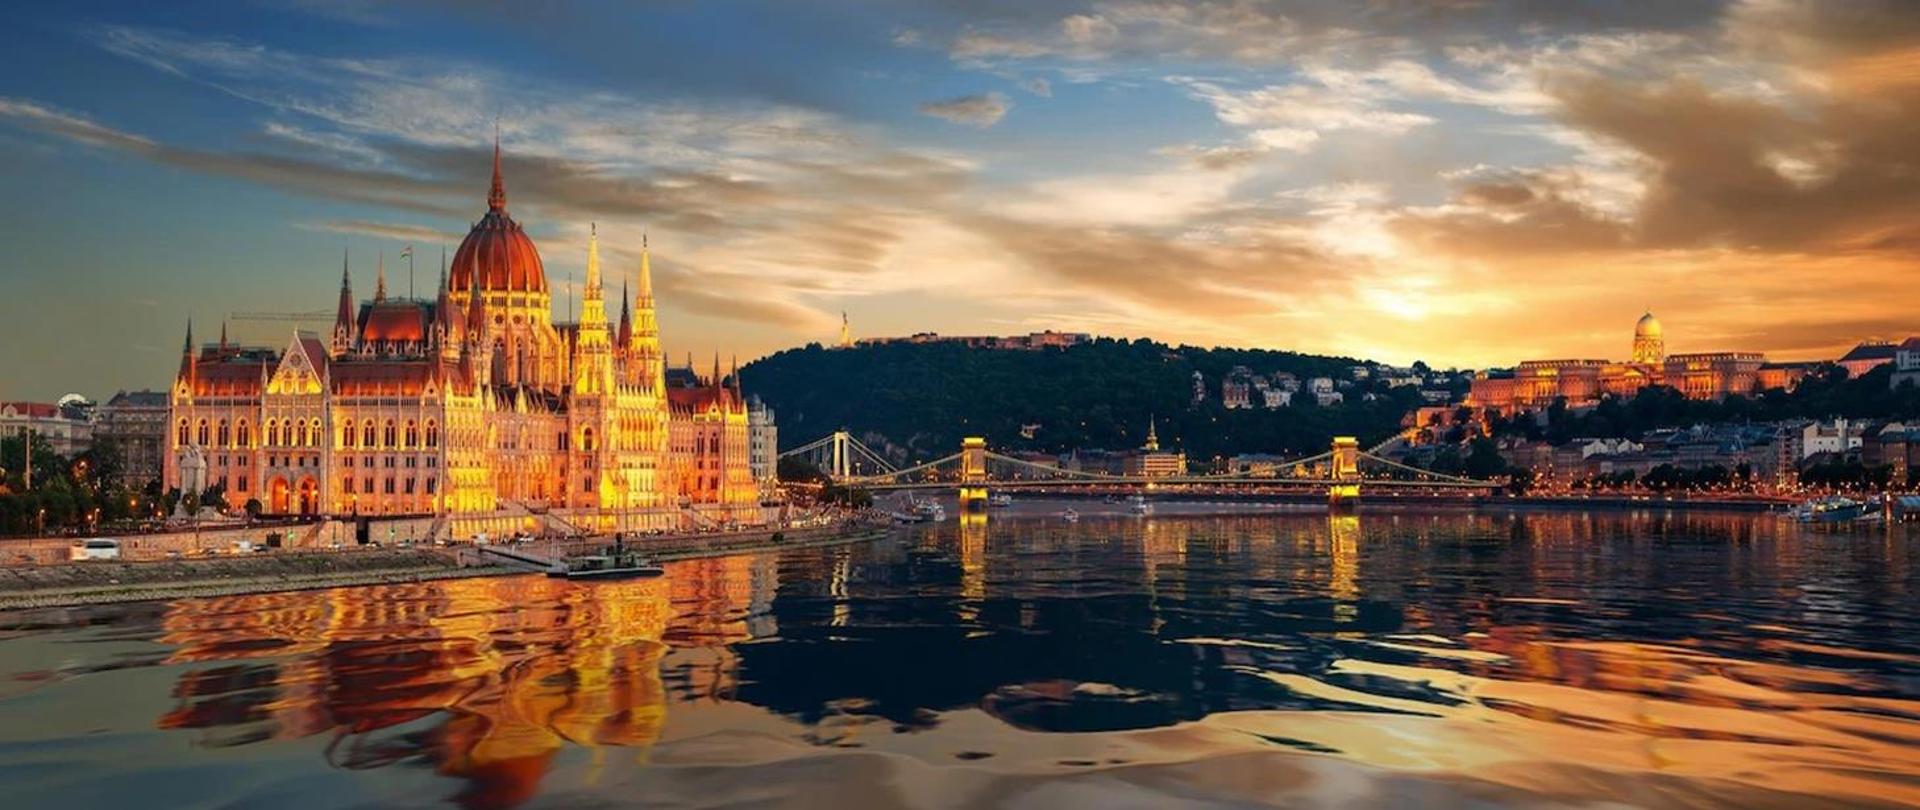 Widok na słynne zabytki w Budapeszcie o zachodzie słońca.